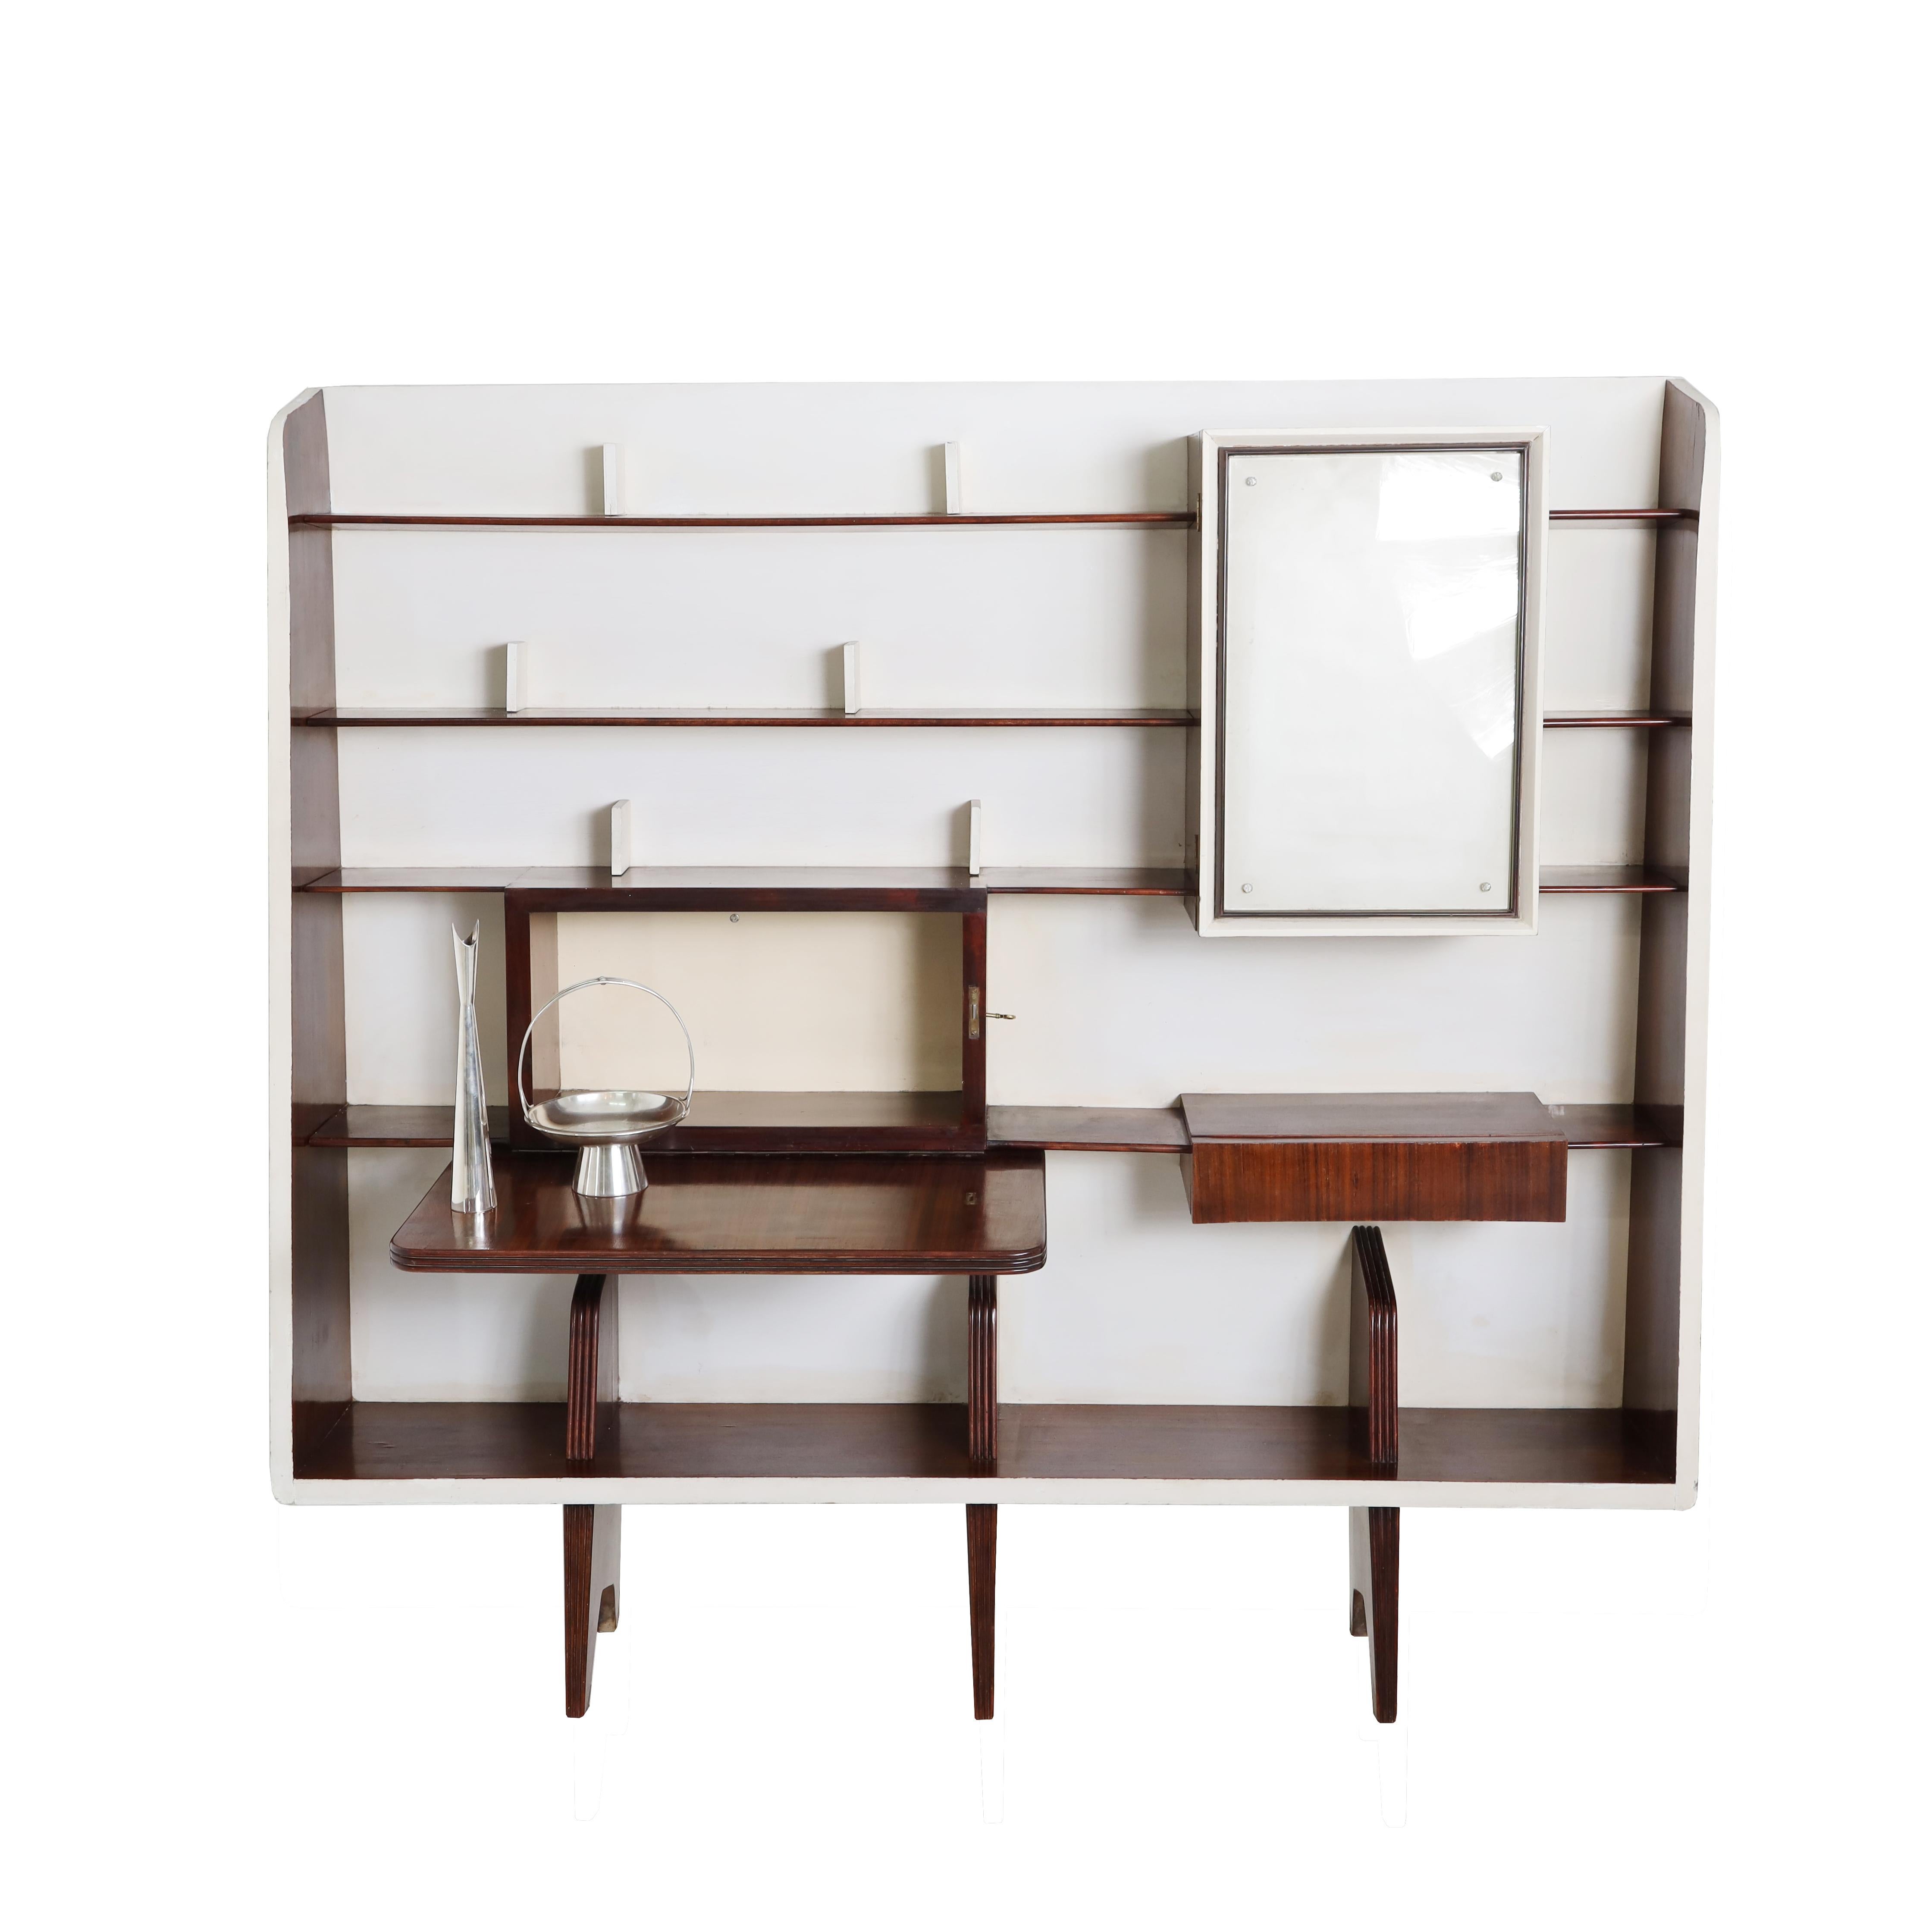 Eine wichtige seltene Gio Ponti Modernist Schrankwand. Furniertes Holz, lackiertes Holz, Spiegelglas, Messing. Ausgestattet mit Regalen, einer abklappbaren Schreibfläche und einem integrierten Getränkeschrank mit verspiegeltem Innenraum. Die